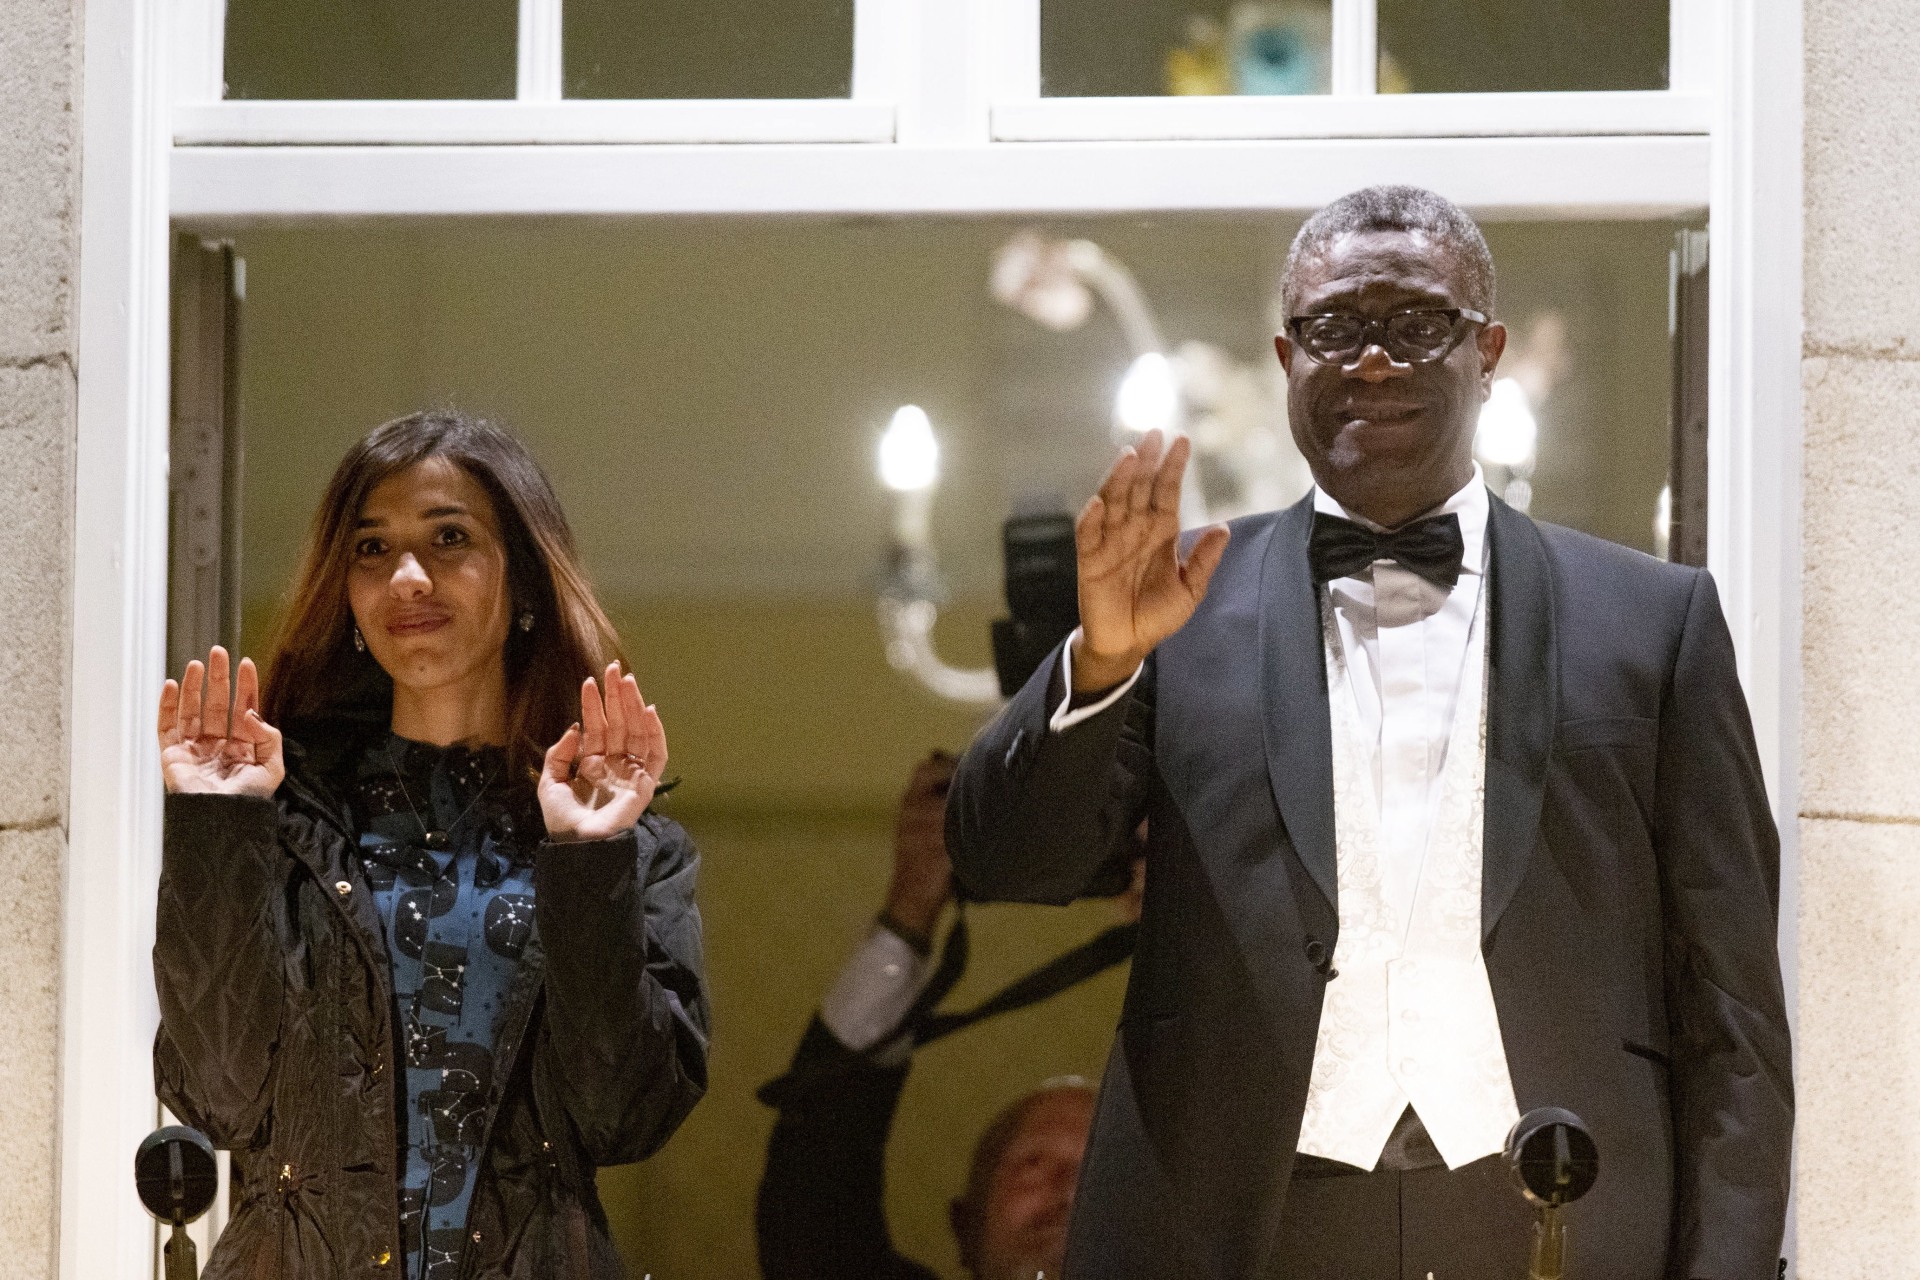 Ginekolog Denis Mukwege z Demokratycznej Republiki Konga i pochodząca z Iraku jazydzka działaczka Nadia Murad odebrali dzisiaj w Oslo Pokojową Nagrodę Nobla. Tegoroczni laureaci otrzymali wyjątkowo długi aplauz. Wzbogaciły go okrzyki autentycznej radości gości z Afryki, fot. Fredrik Hagen, PAP/EPA 